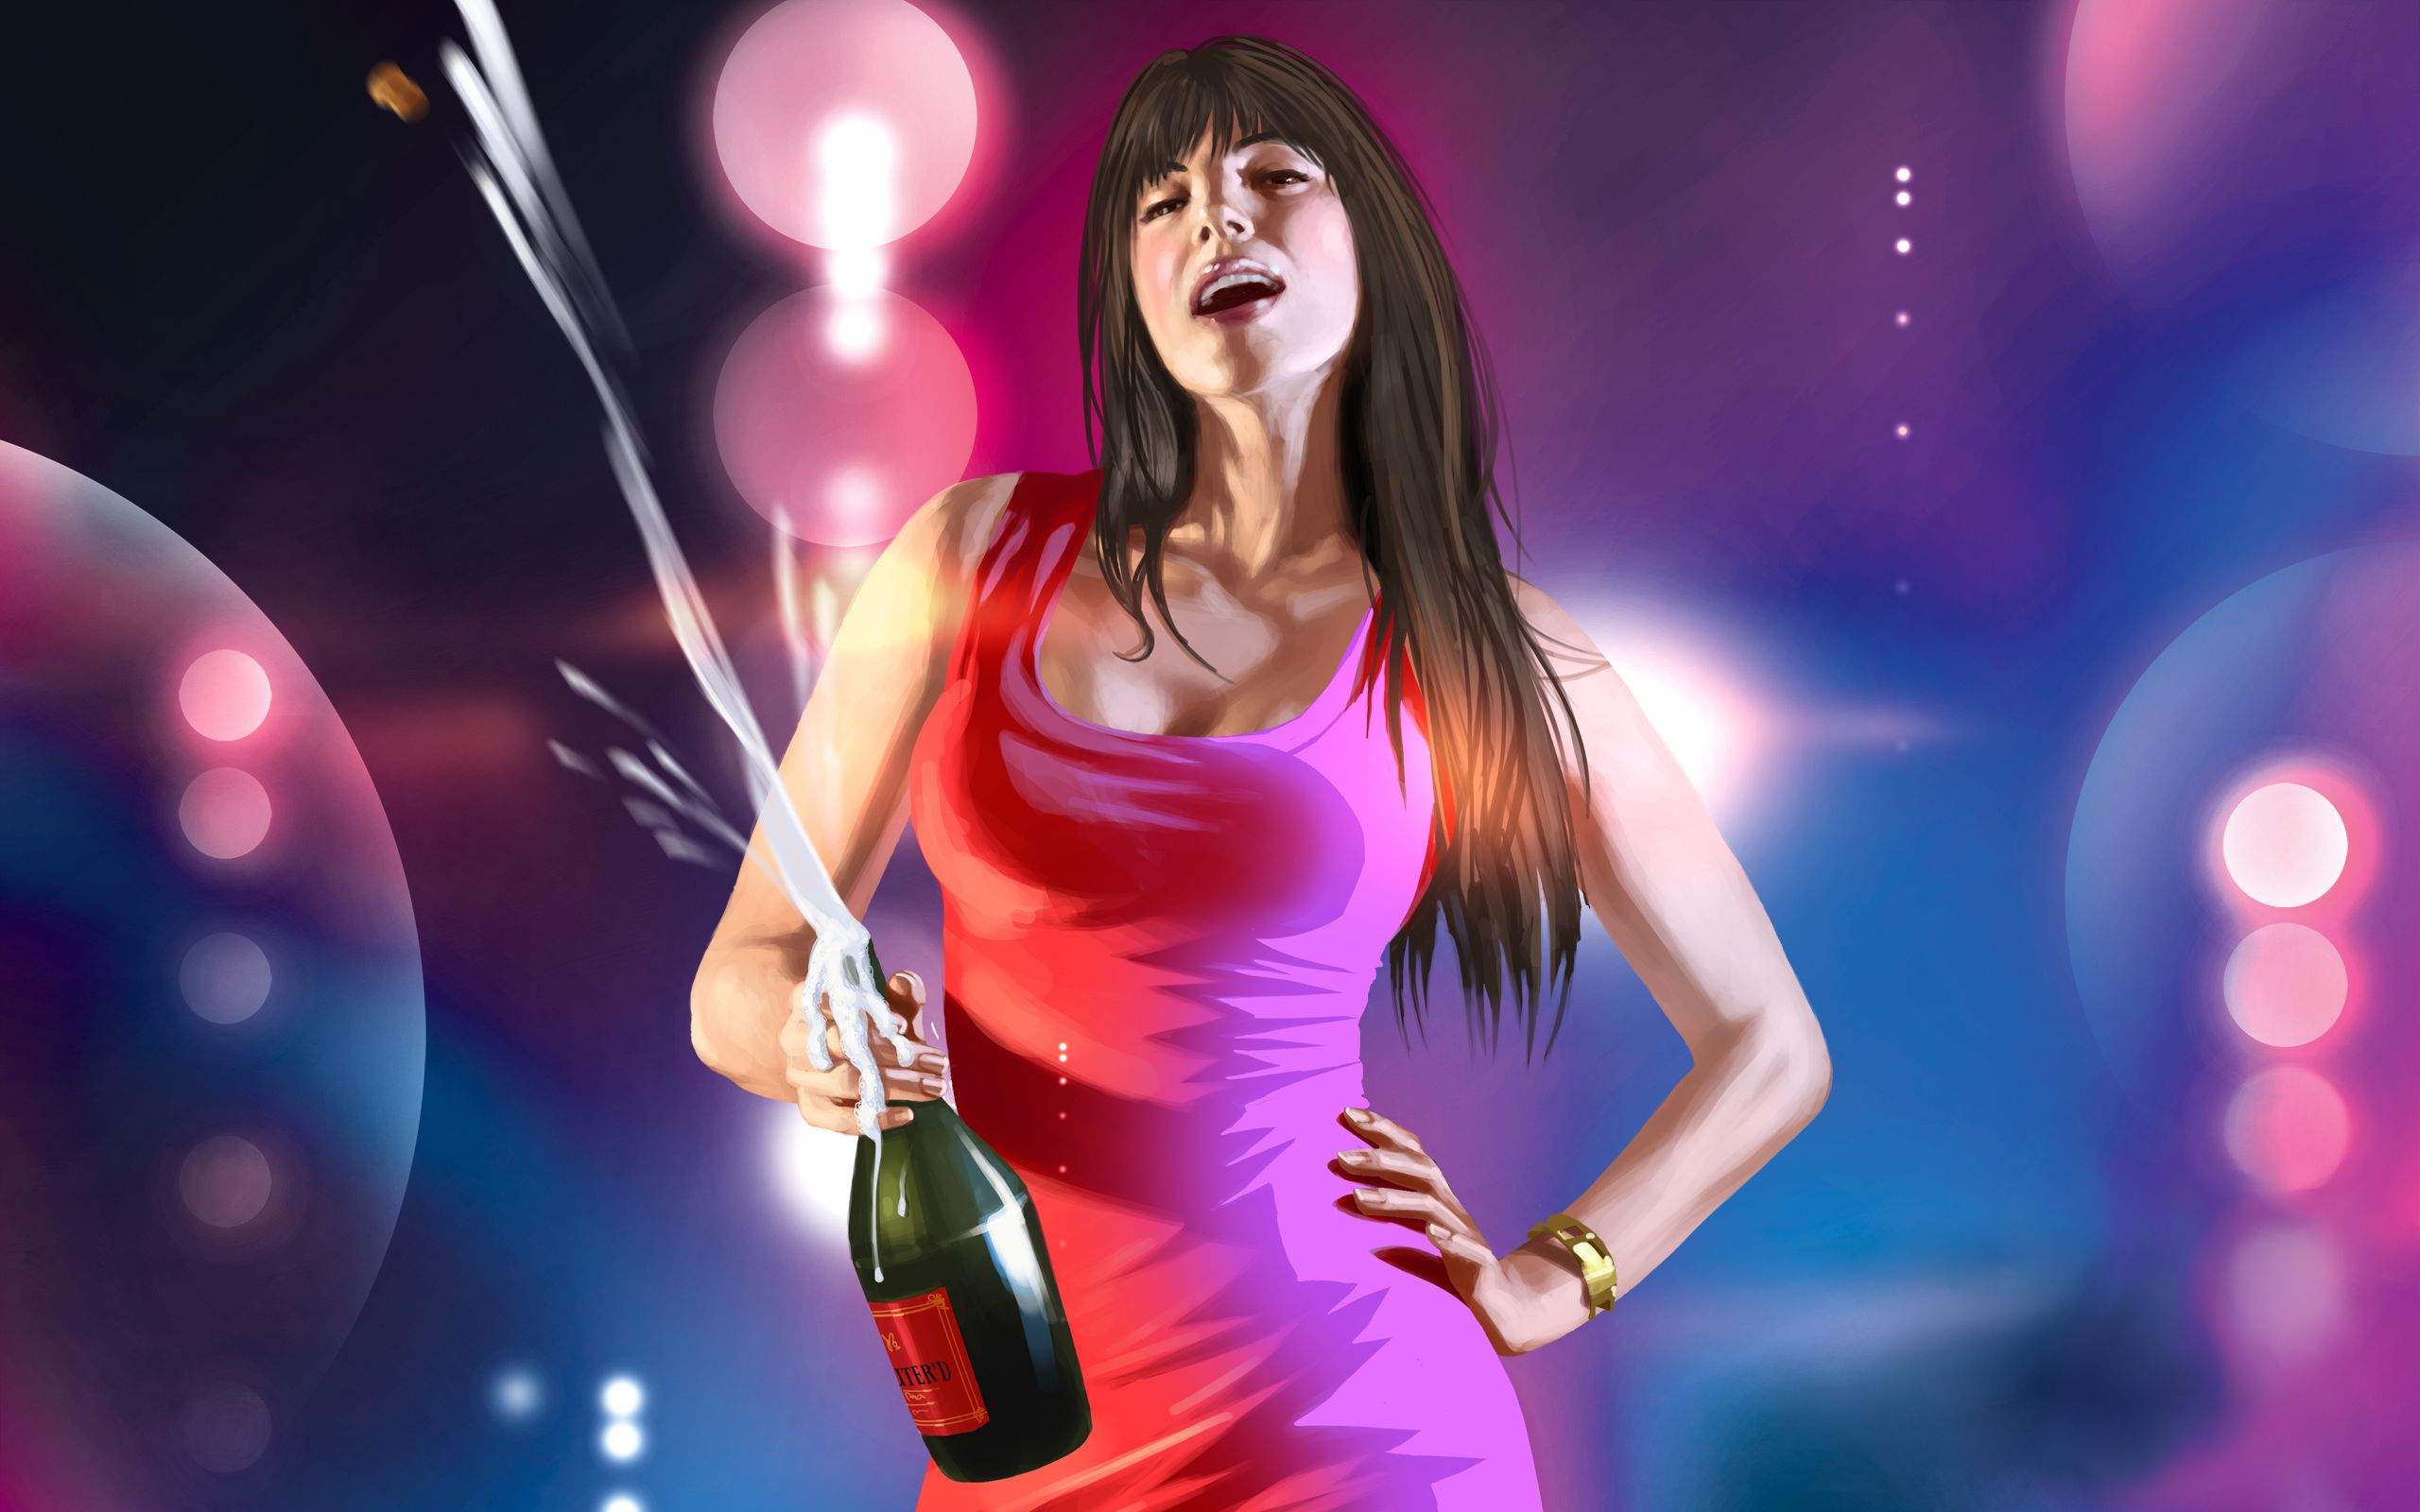 Beautiful image of Gta, desktop wallpaper of girl, champagne